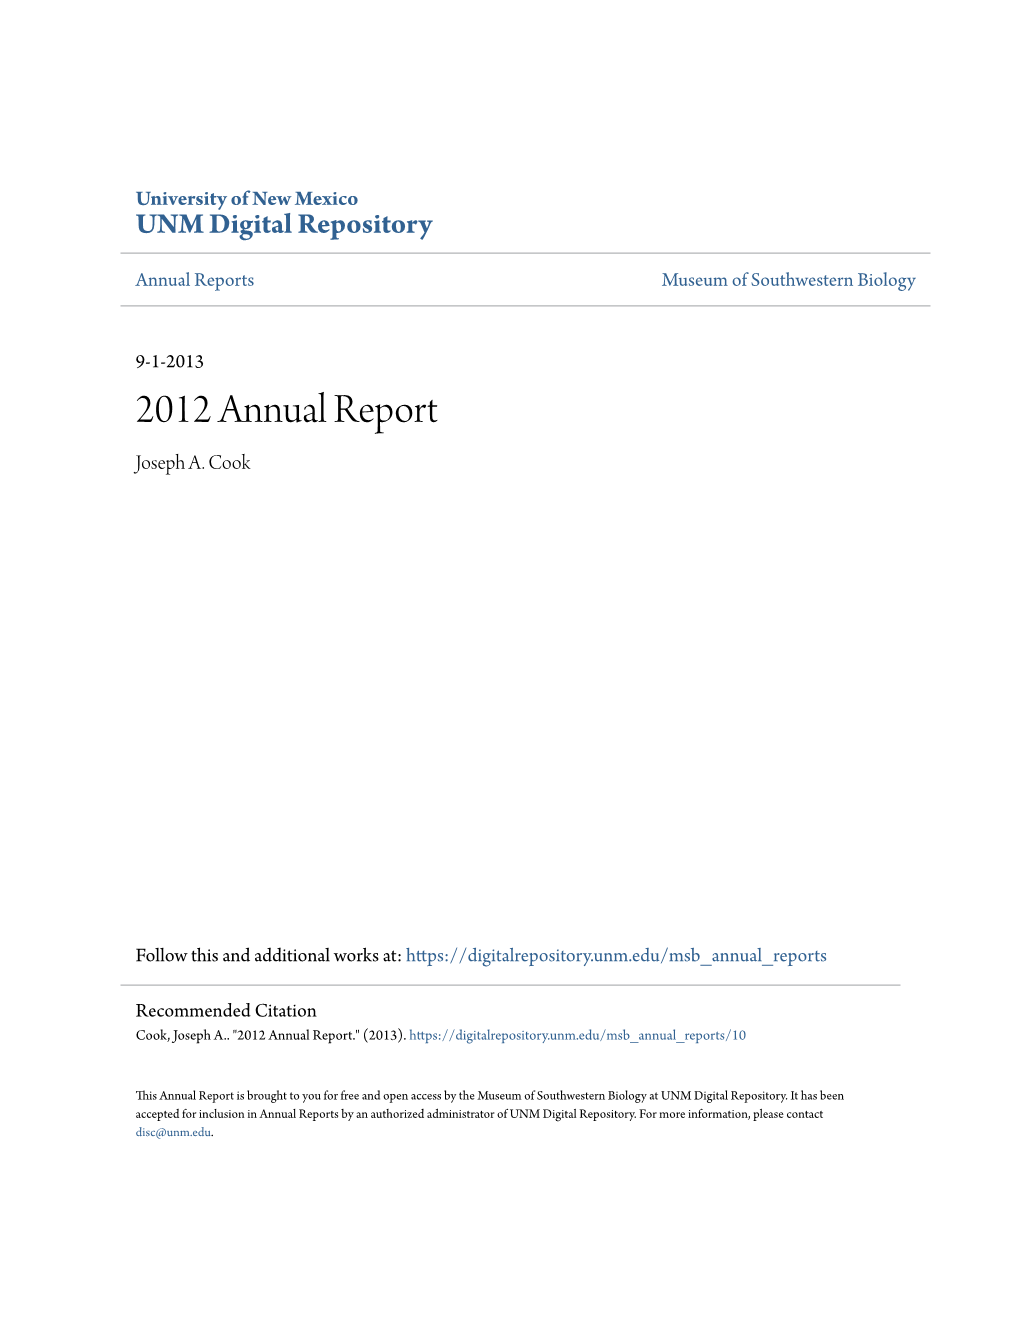 2012 Annual Report Joseph A